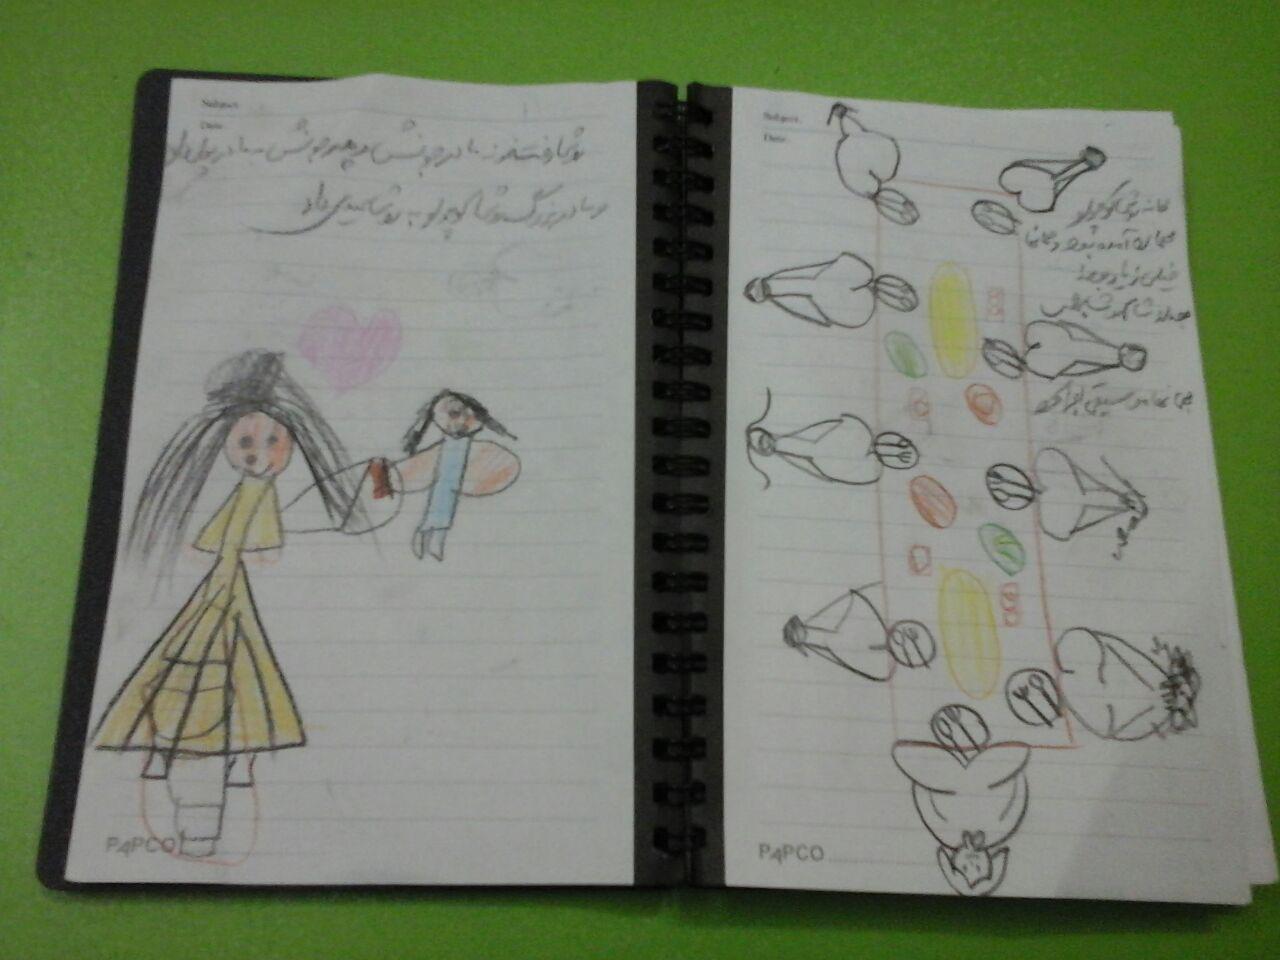 نقاشی خاطرات عید نوروز بهمراه خاطره گویی و داستان سرایی و مکتوب توسط اولیا، پیش دبستانی های باران اندیشه